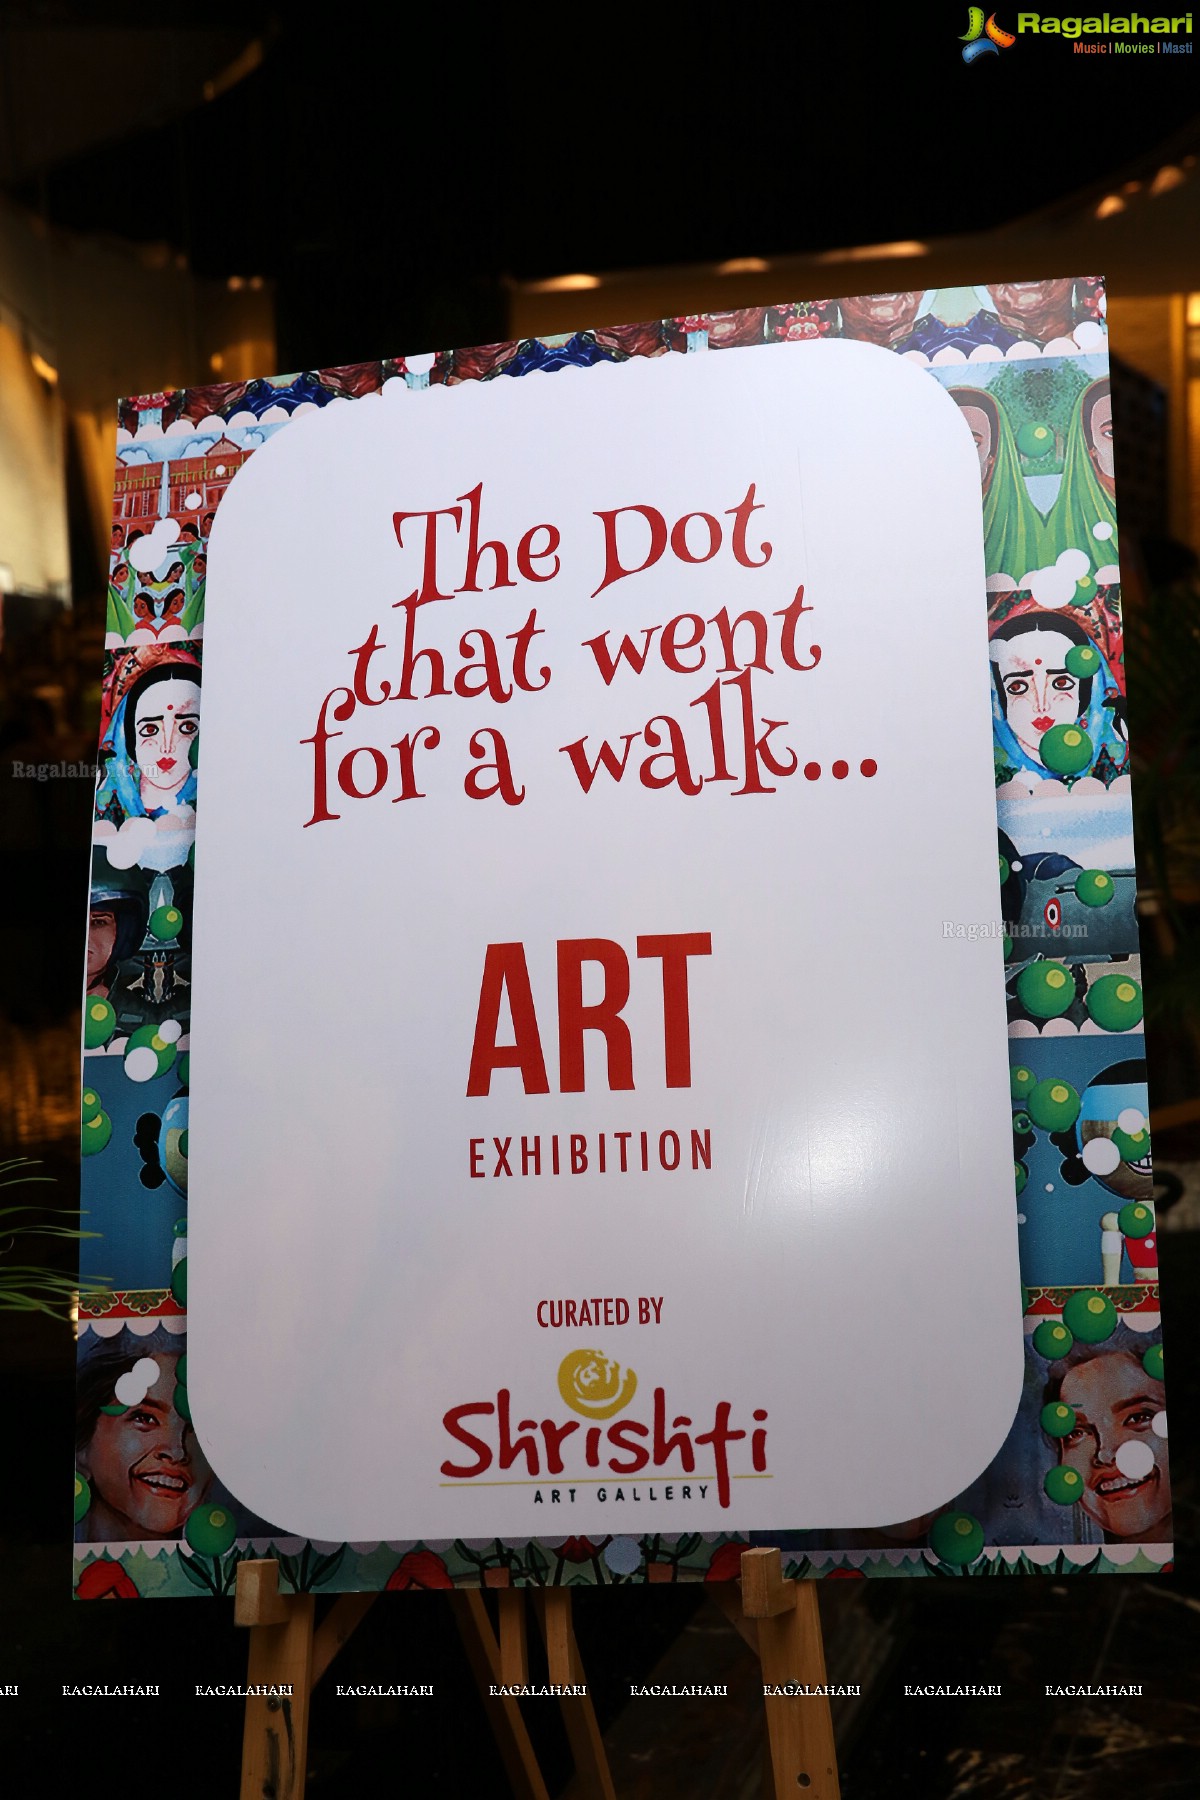 The Dot That Went For a Walk Book Launch & an Art Exhibition at Park Hyatt